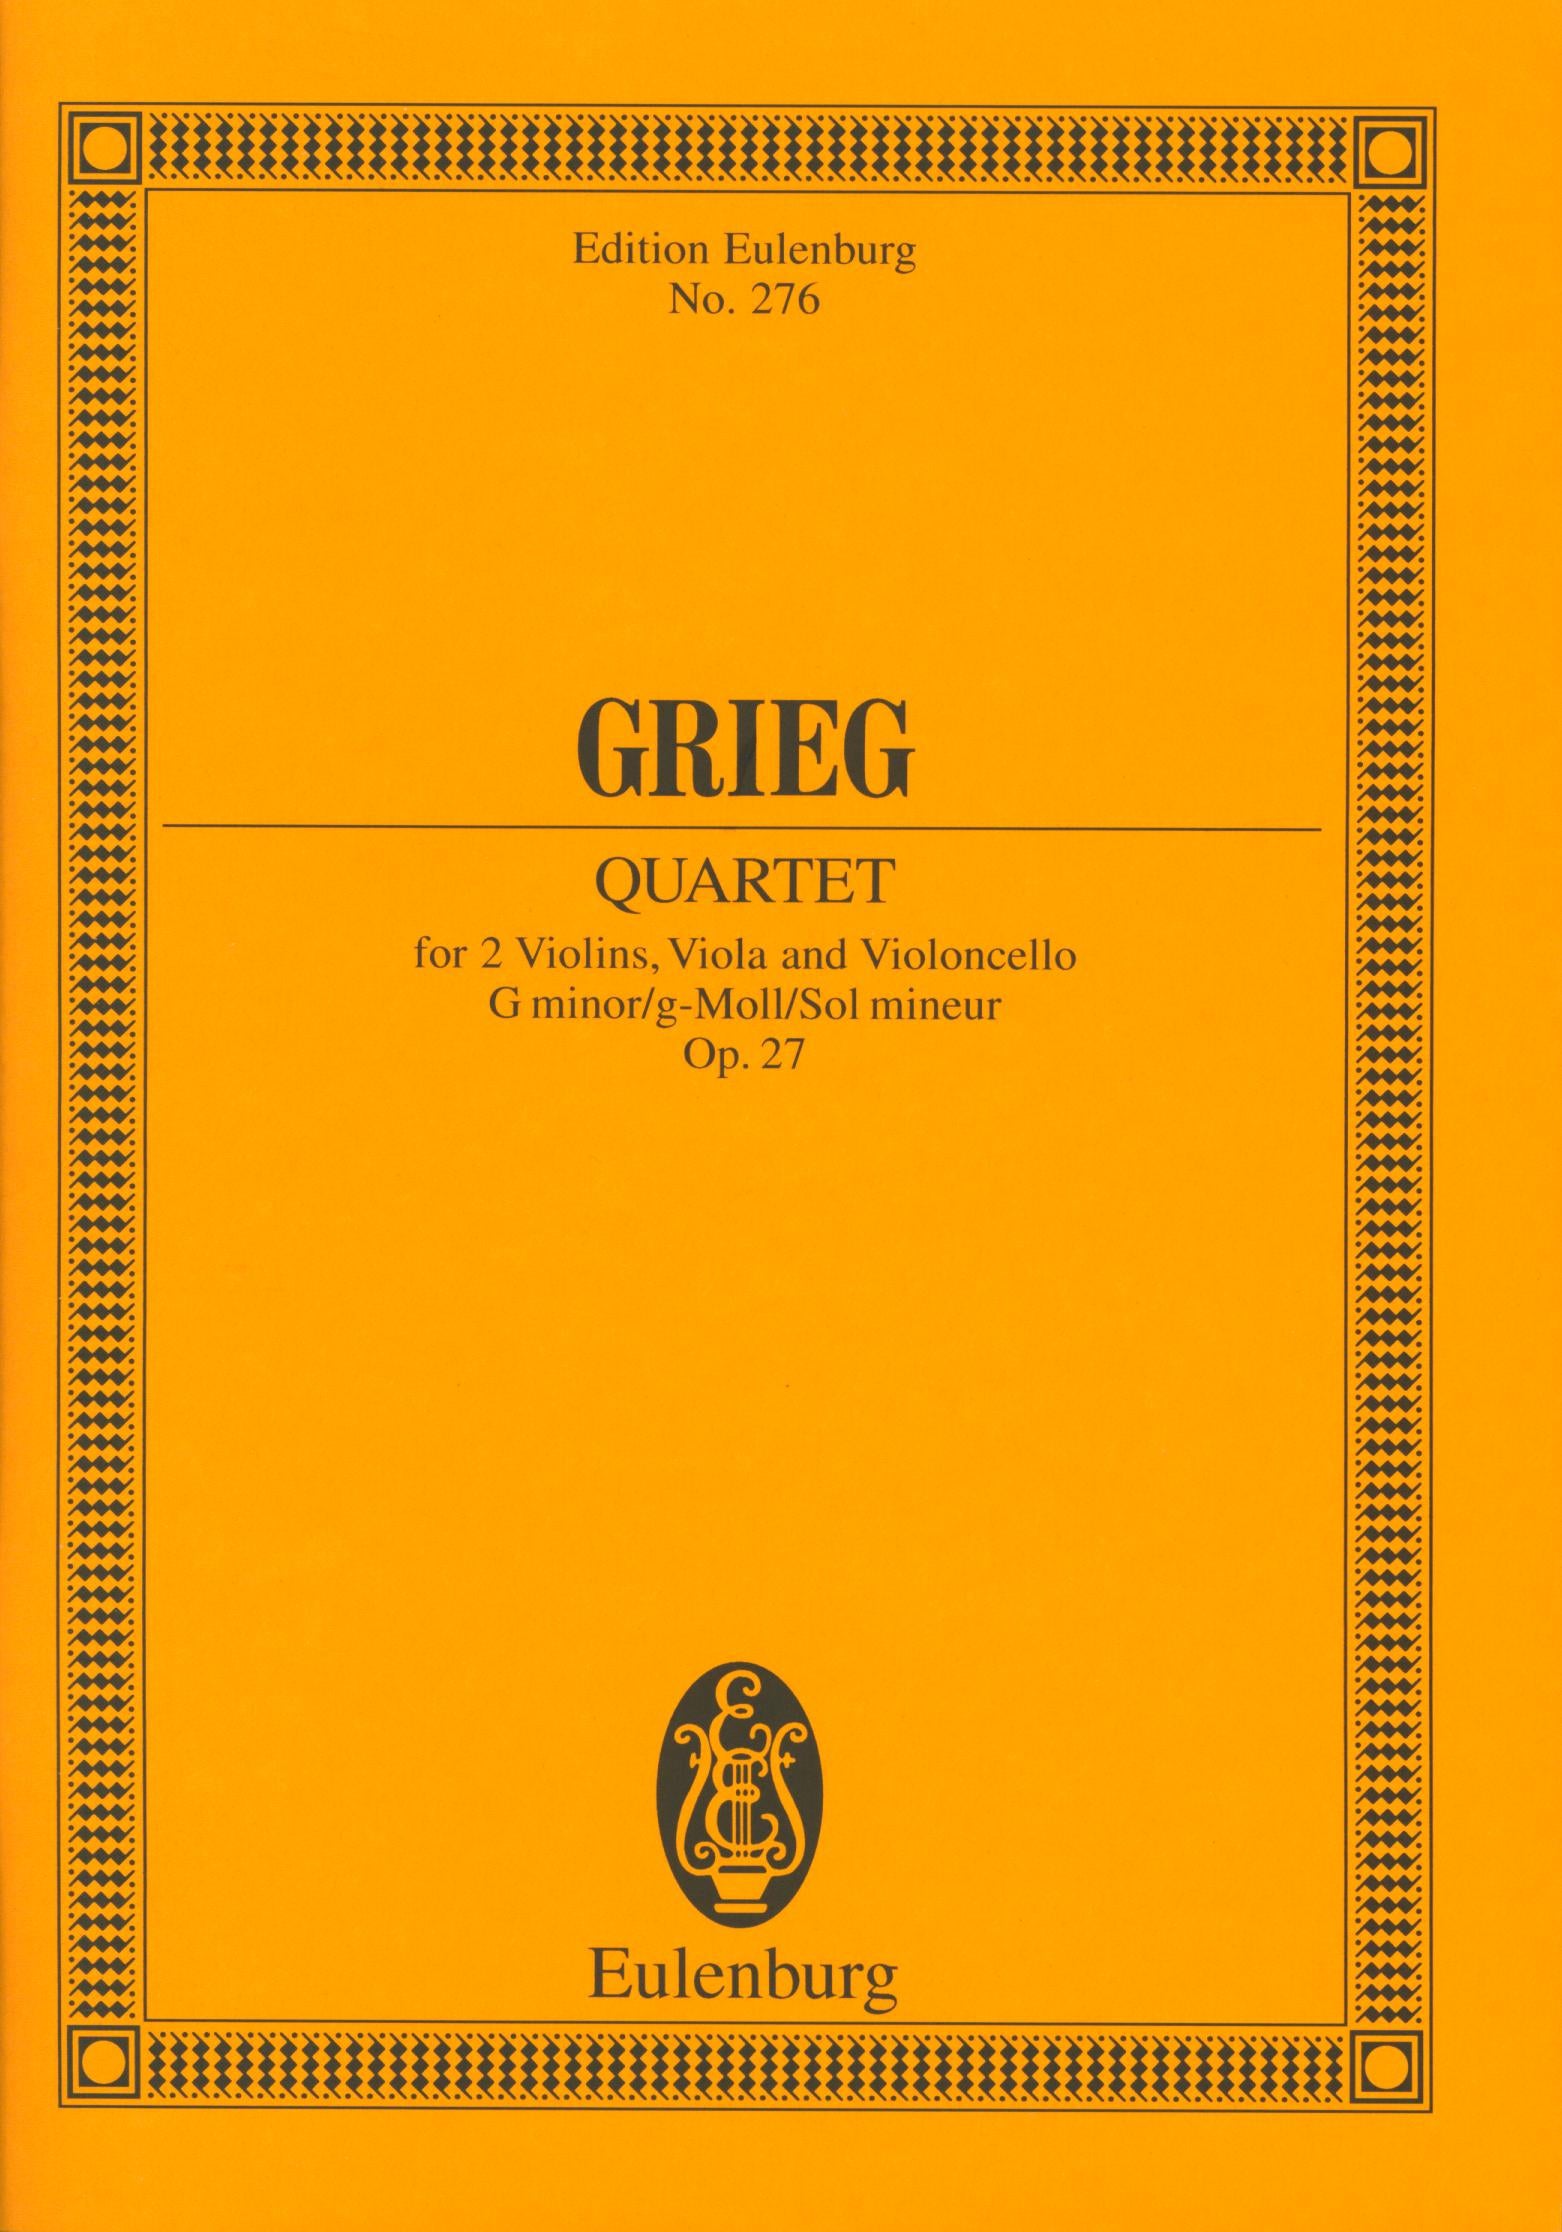 Grieg: String Quartet in G Minor, Op. 27